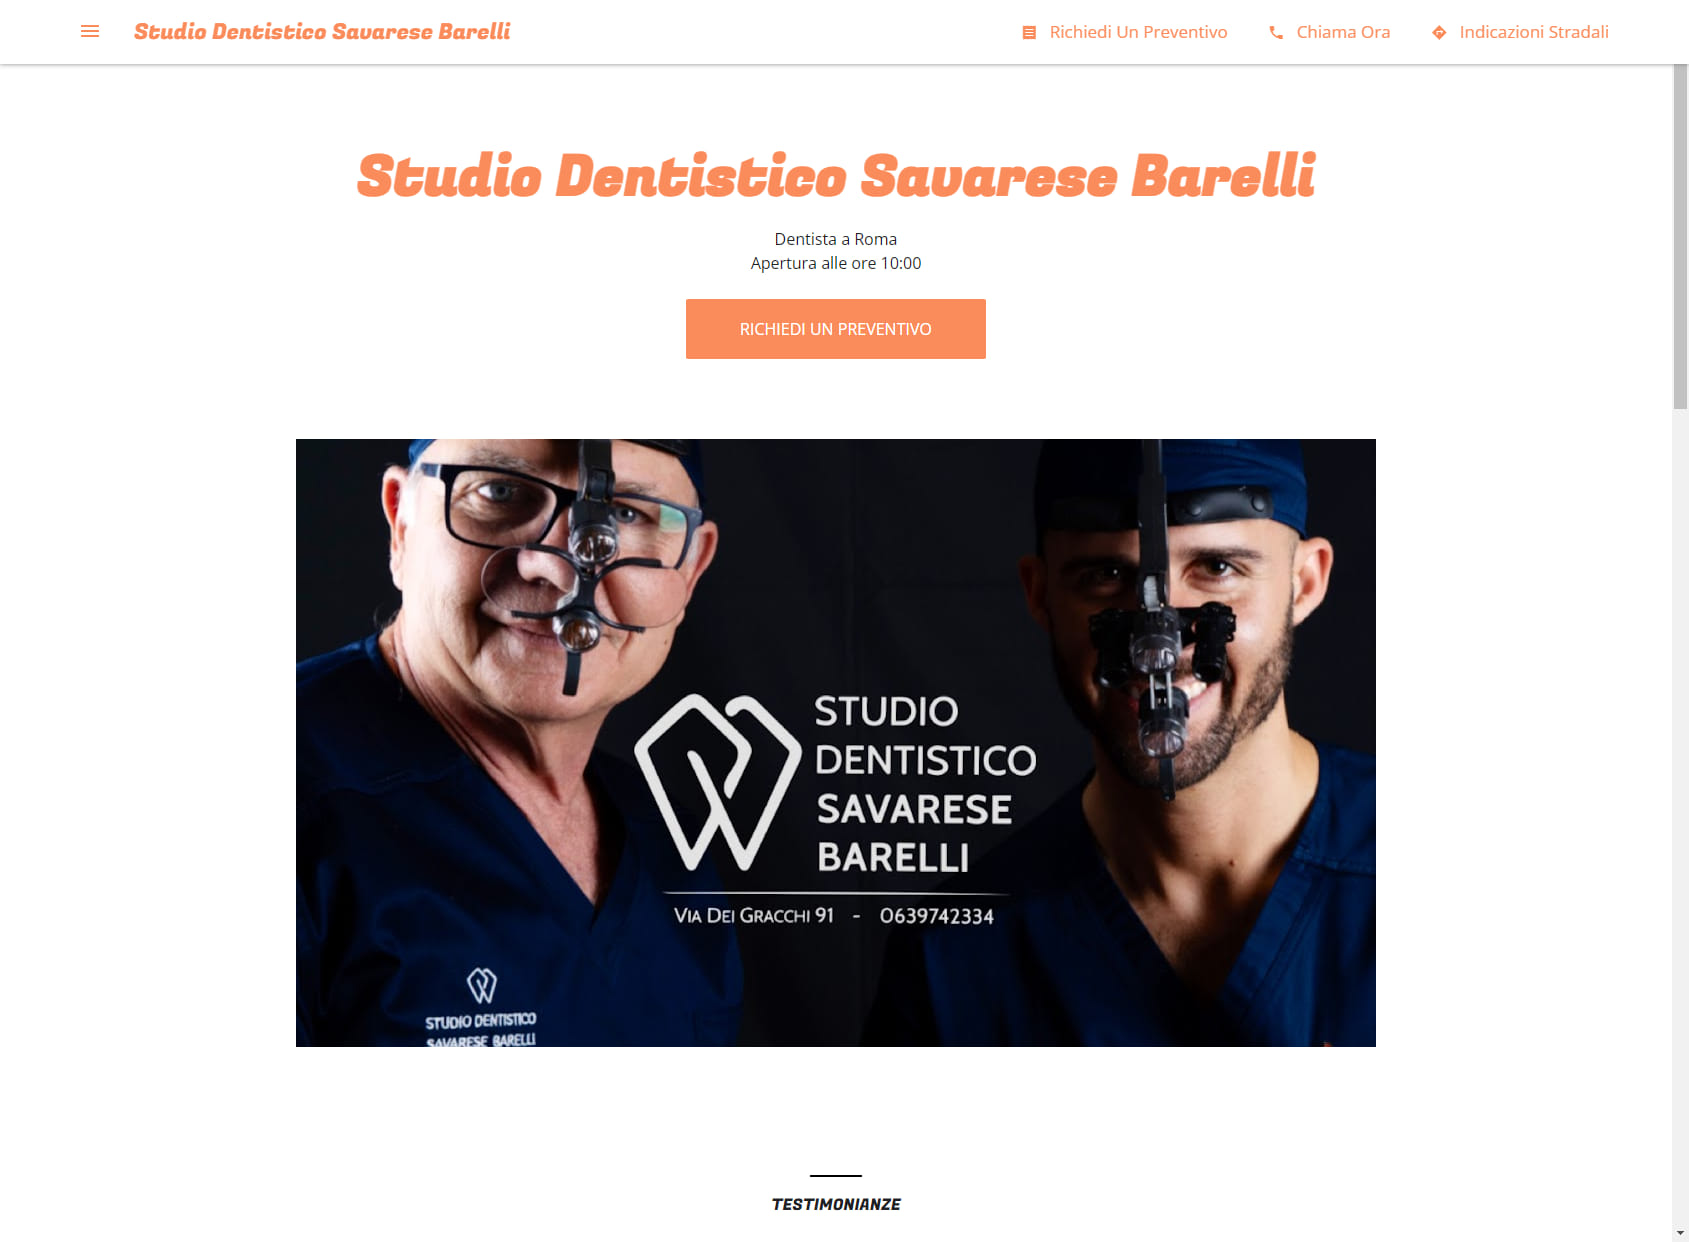 Studio Dentistico Savarese Barelli